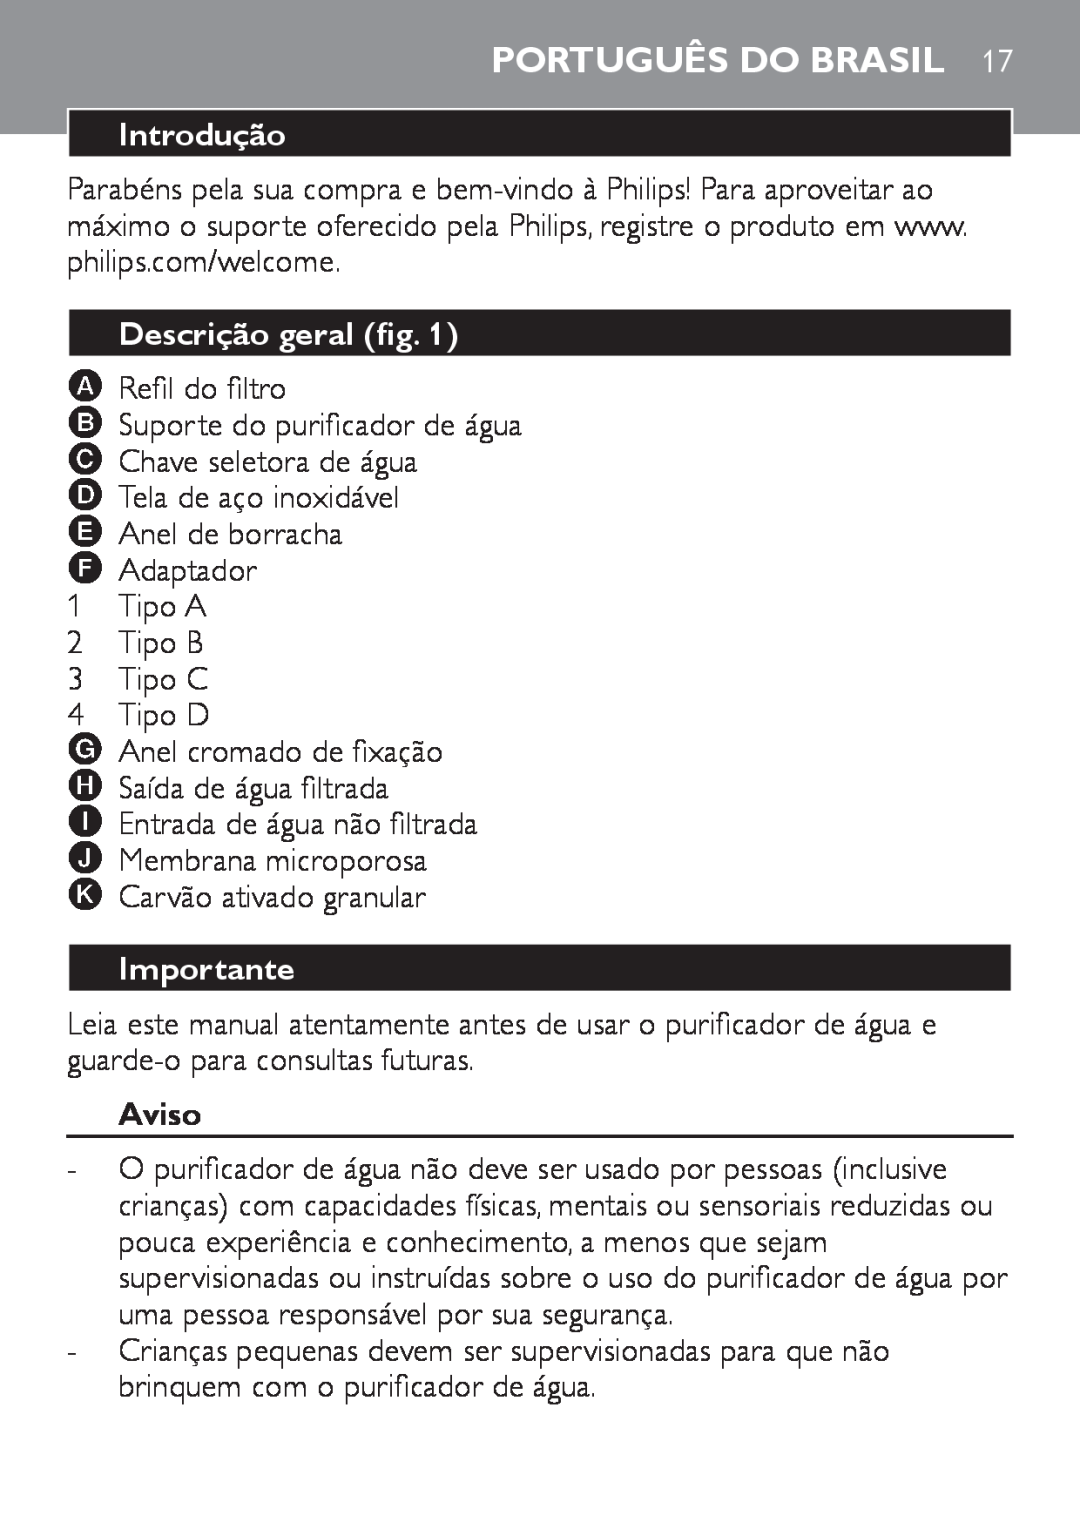 Philips WP3811, WP3810 manual Português do Brasil, Introdução, Descrição geral fig, Importante, Aviso 